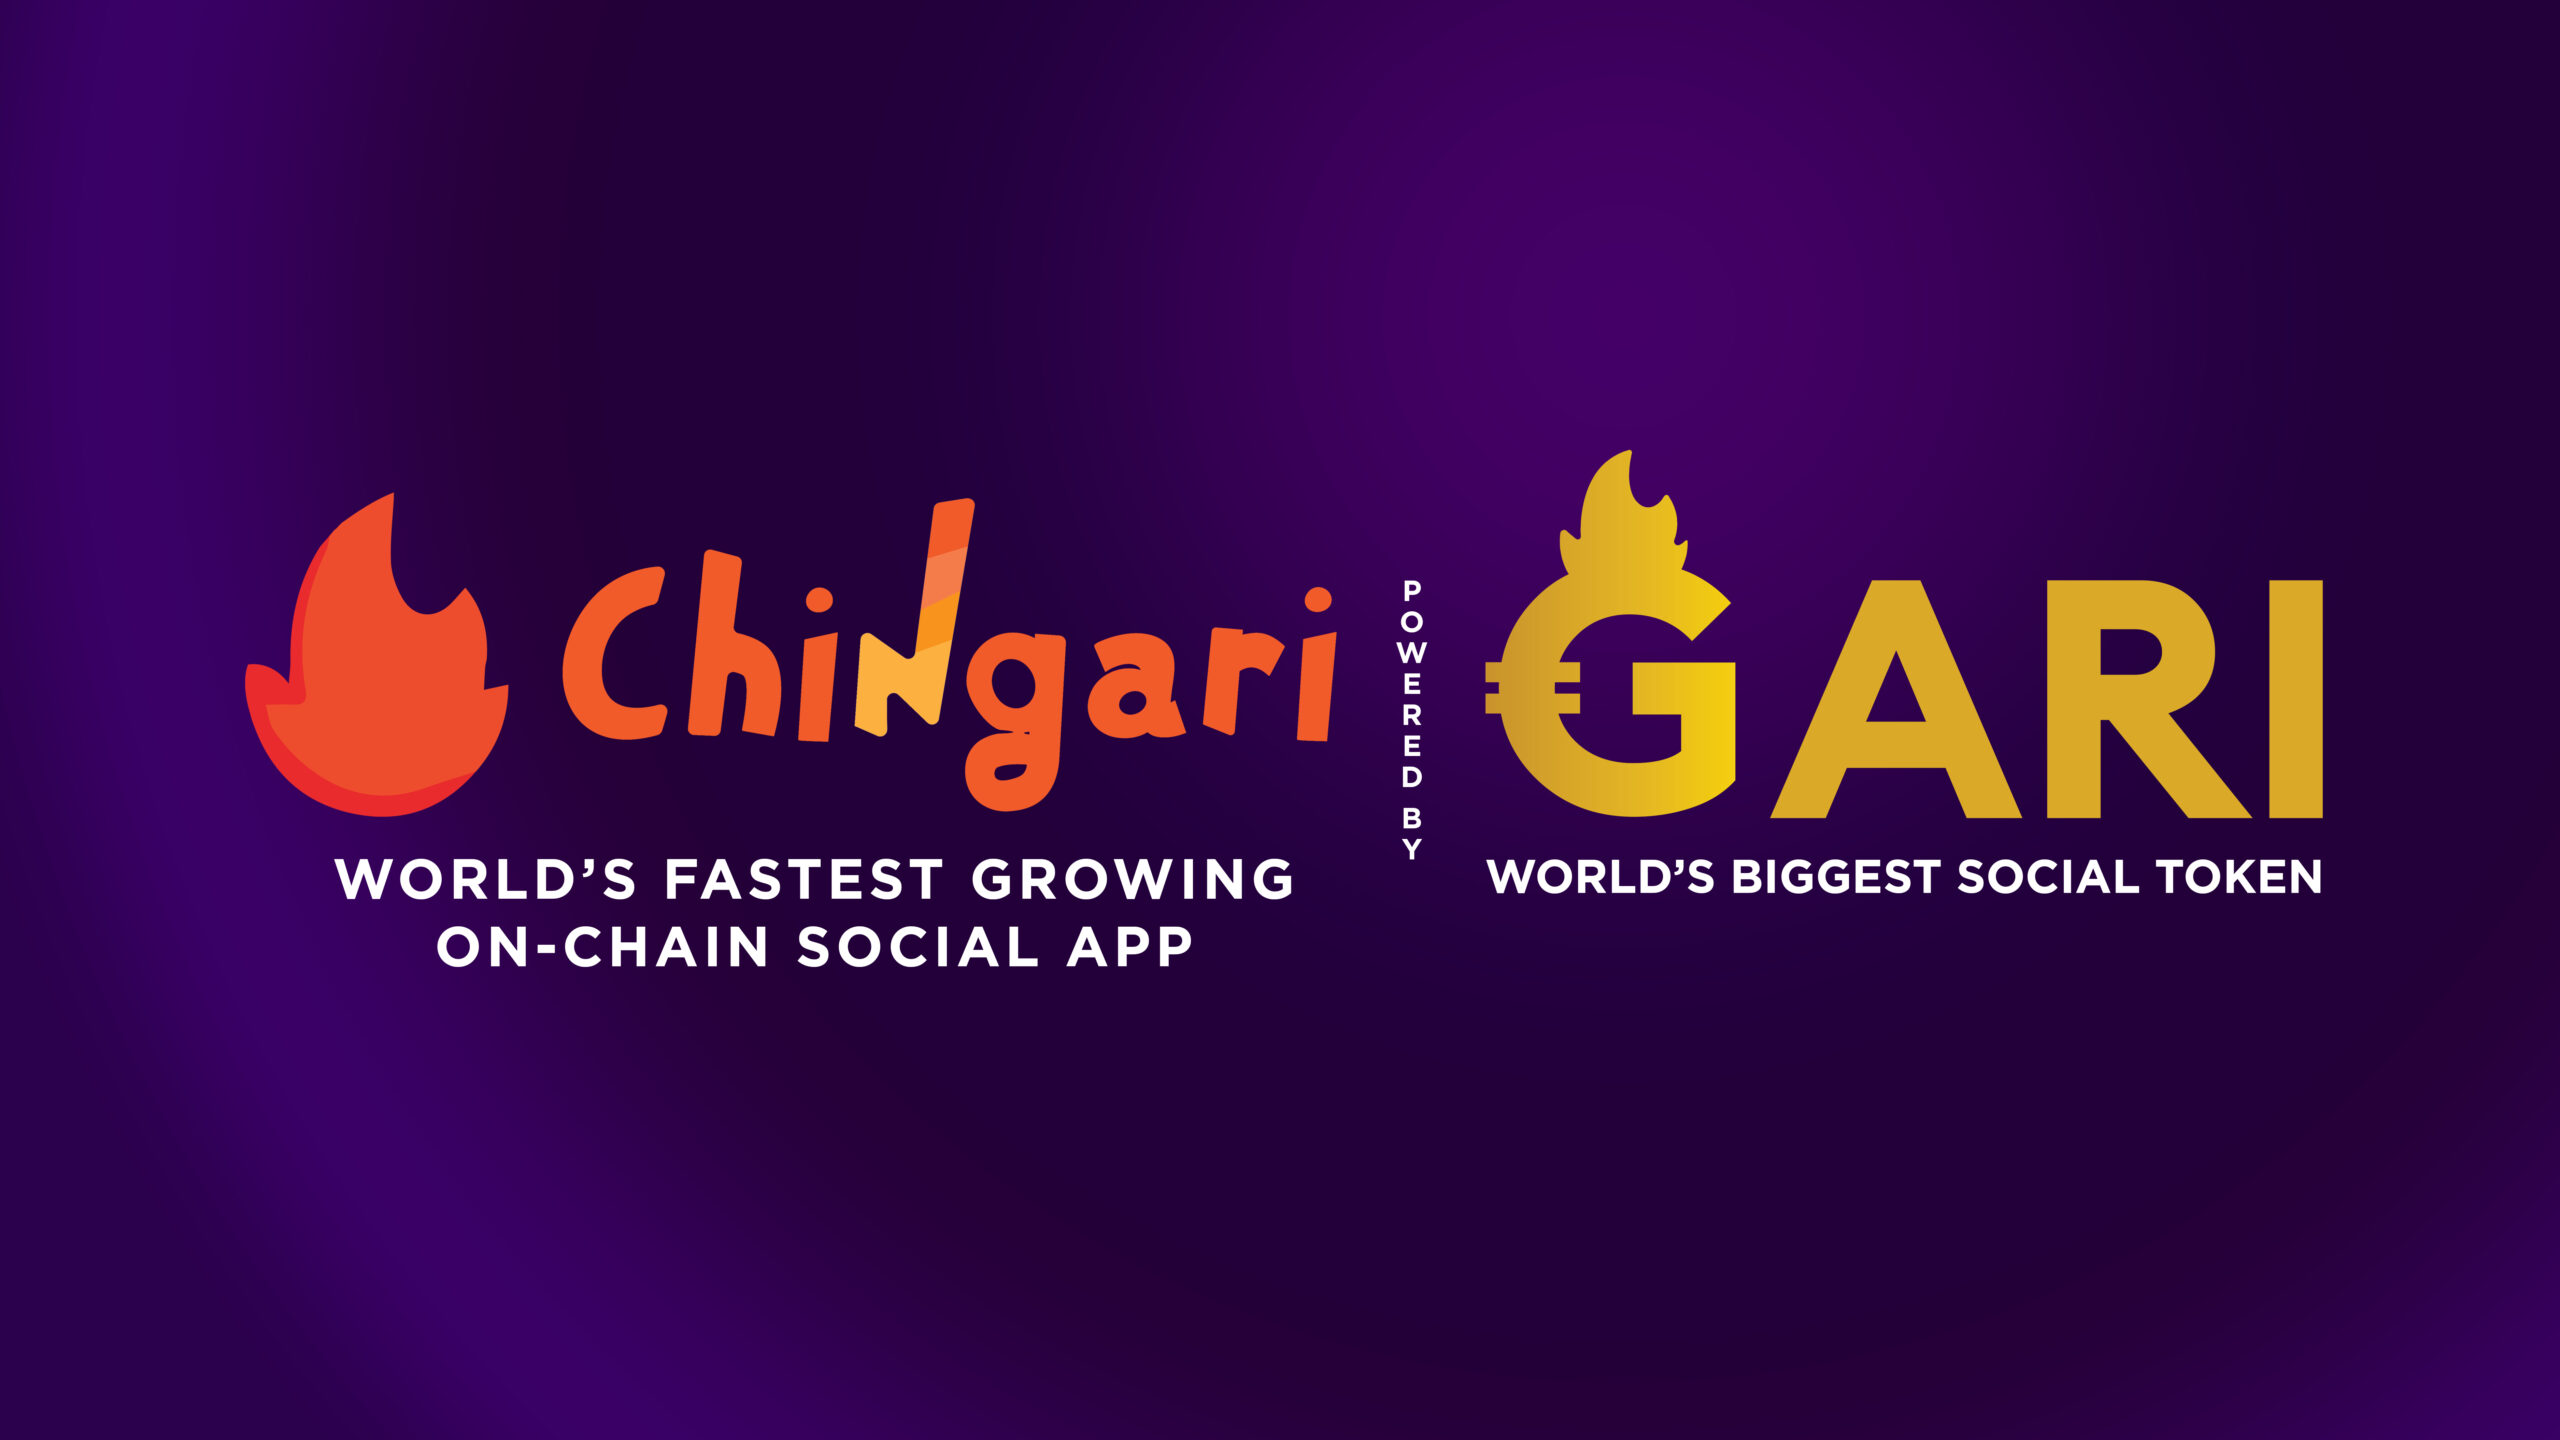 Chingari Gari Logo New Tagline 01 1 1 Scaled